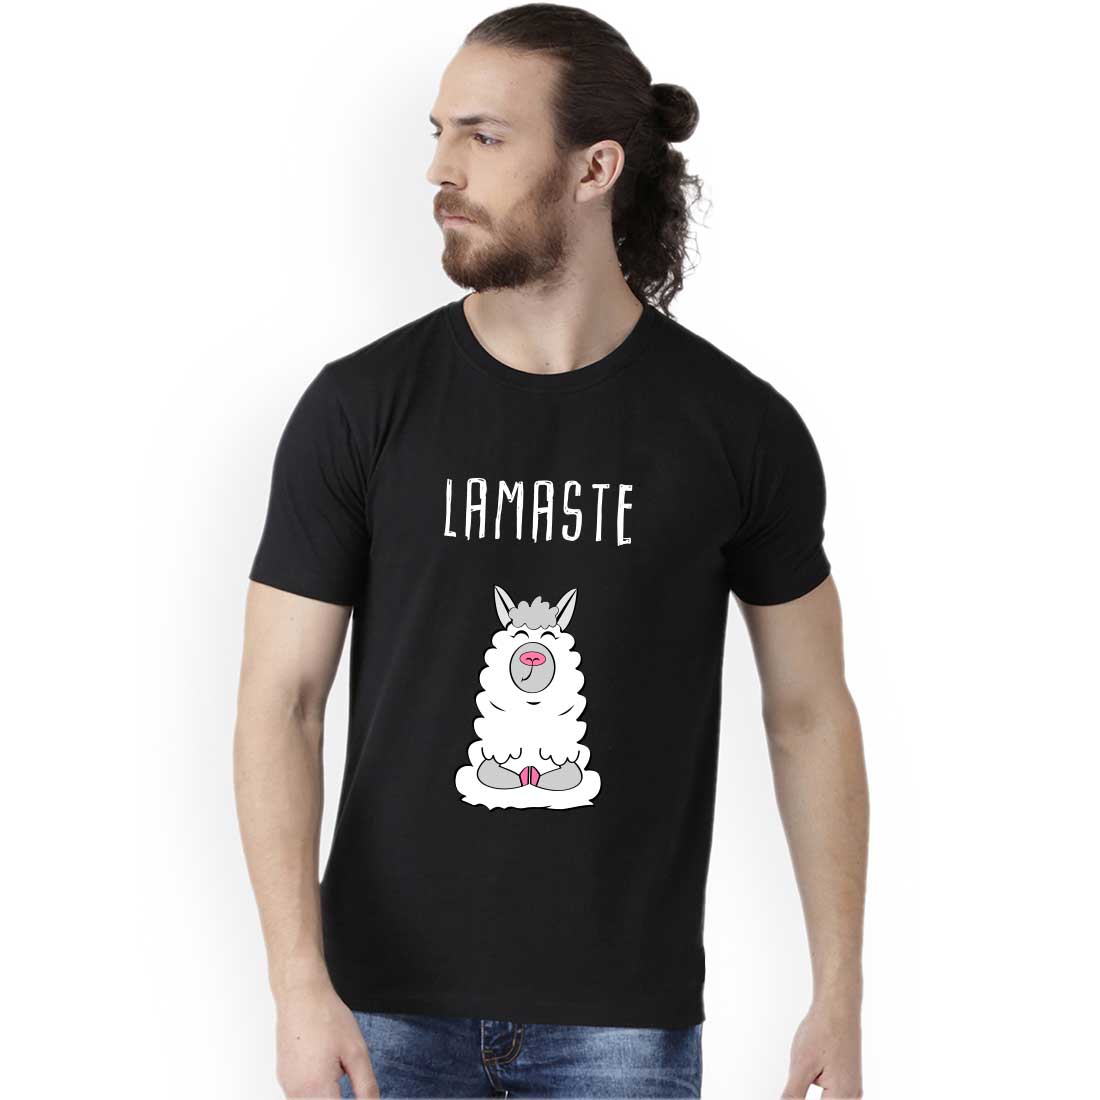 Lamaste Black Men T-Shirt